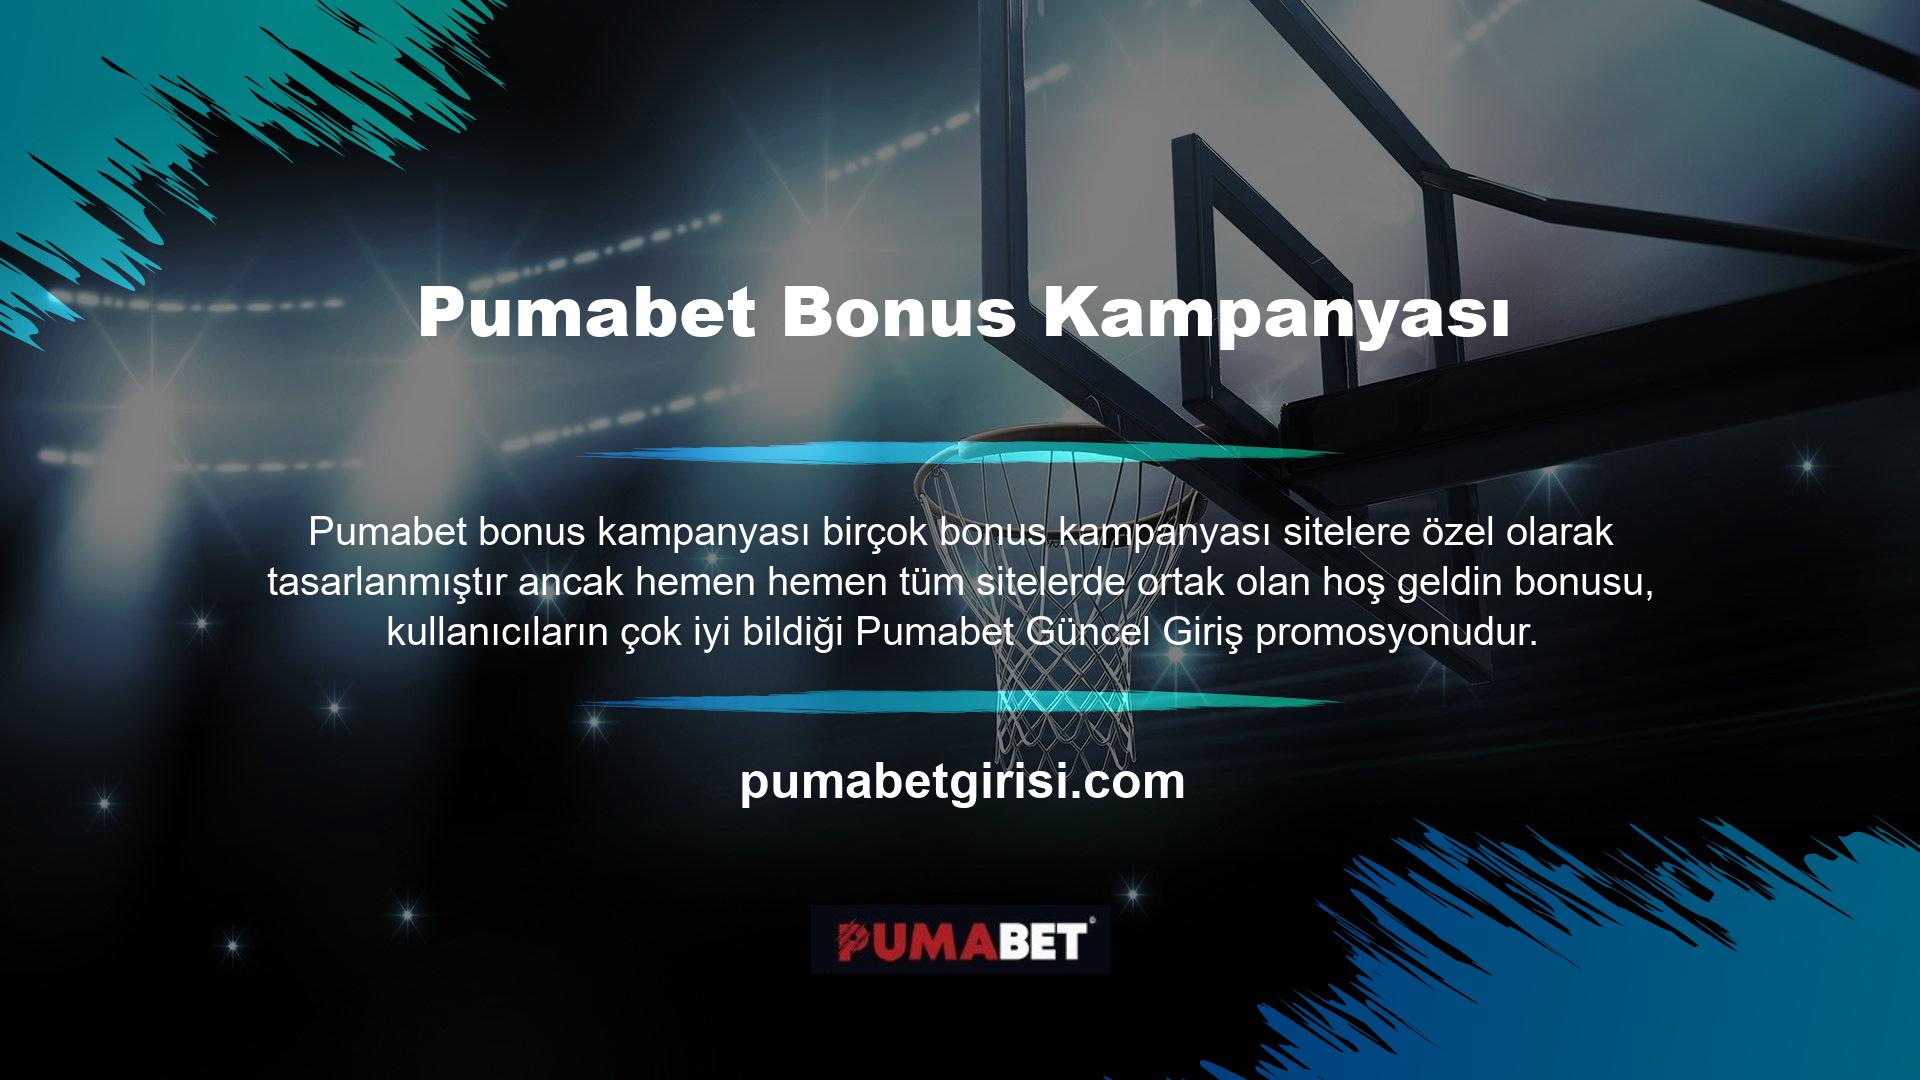 Pumabet, piyasada başarılı pazarlama kampanyaları başlatan web sitelerinden biridir